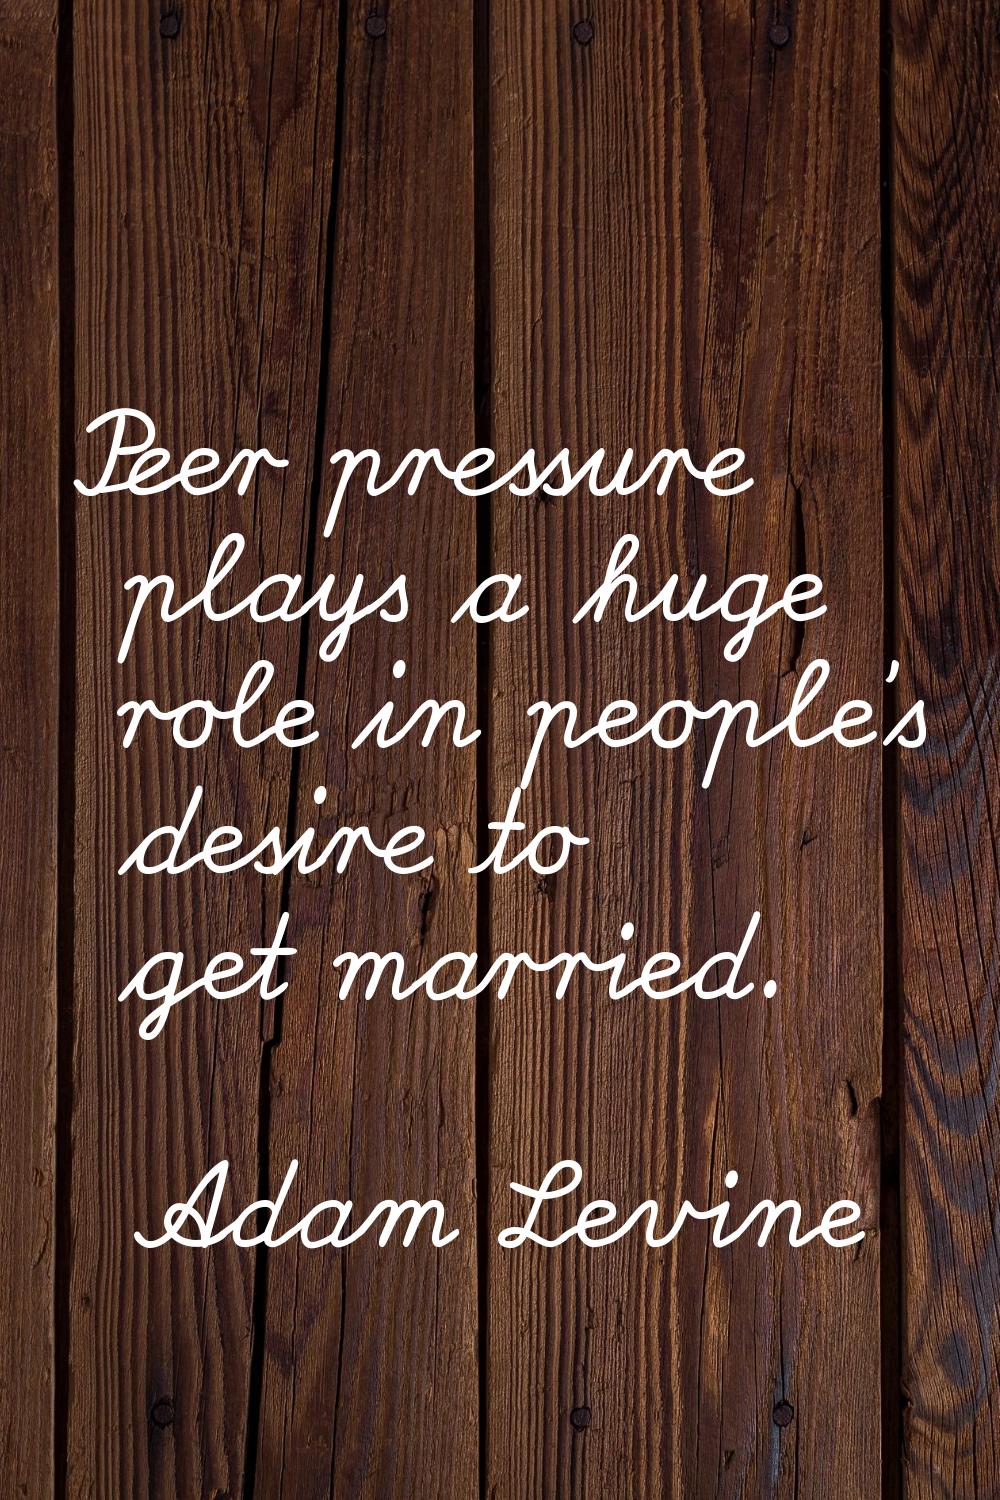 Peer pressure plays a huge role in people's desire to get married.